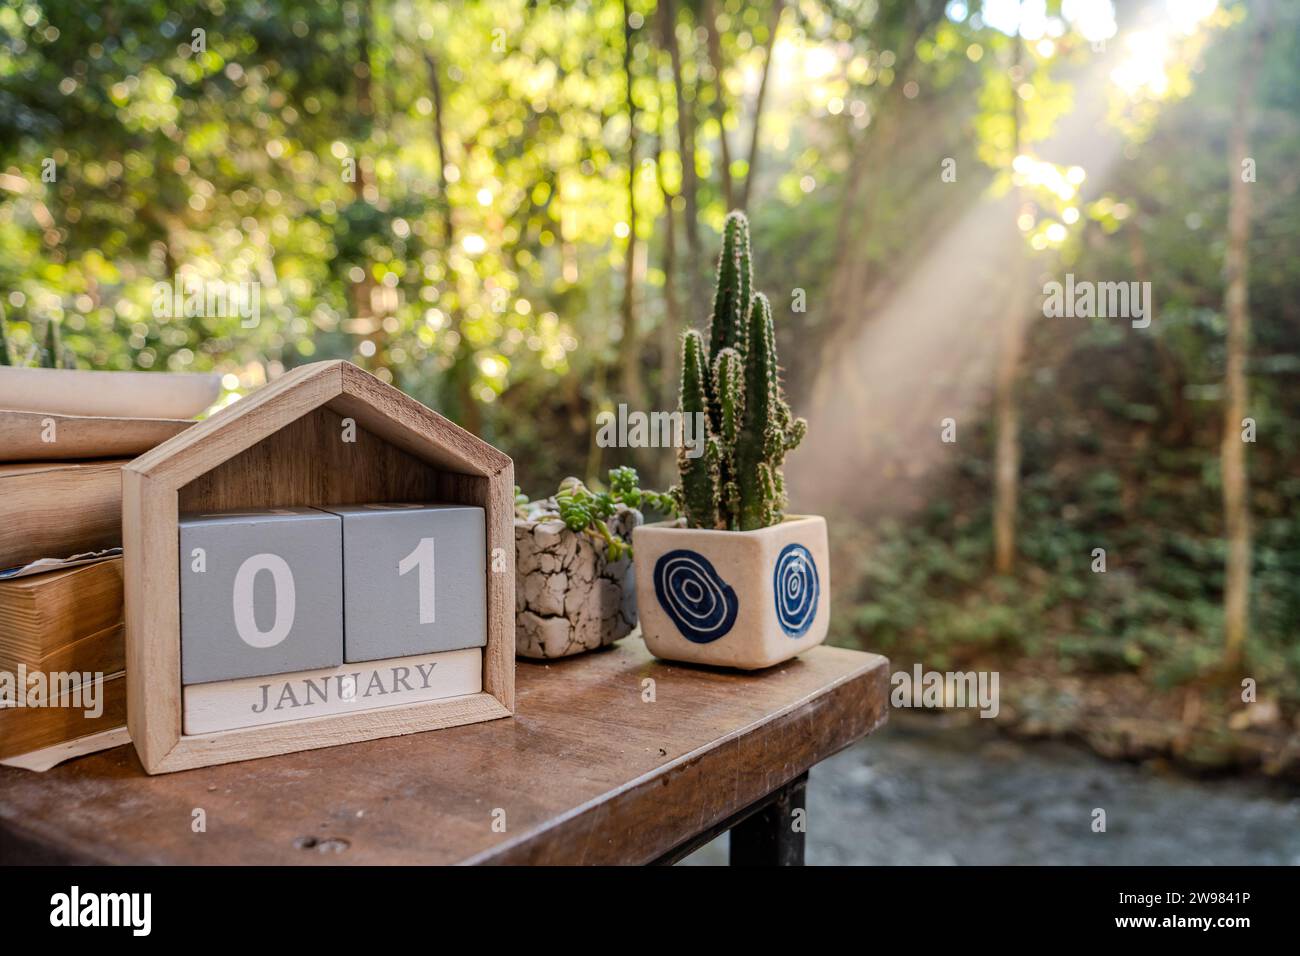 Januar, Datumstext auf Kalenderwürfelblock auf Holztisch mit Buch und Kakteen in einem Pflanztopf, erster Sonnenaufgang des Jahres im Hintergrund mit Wald Stockfoto